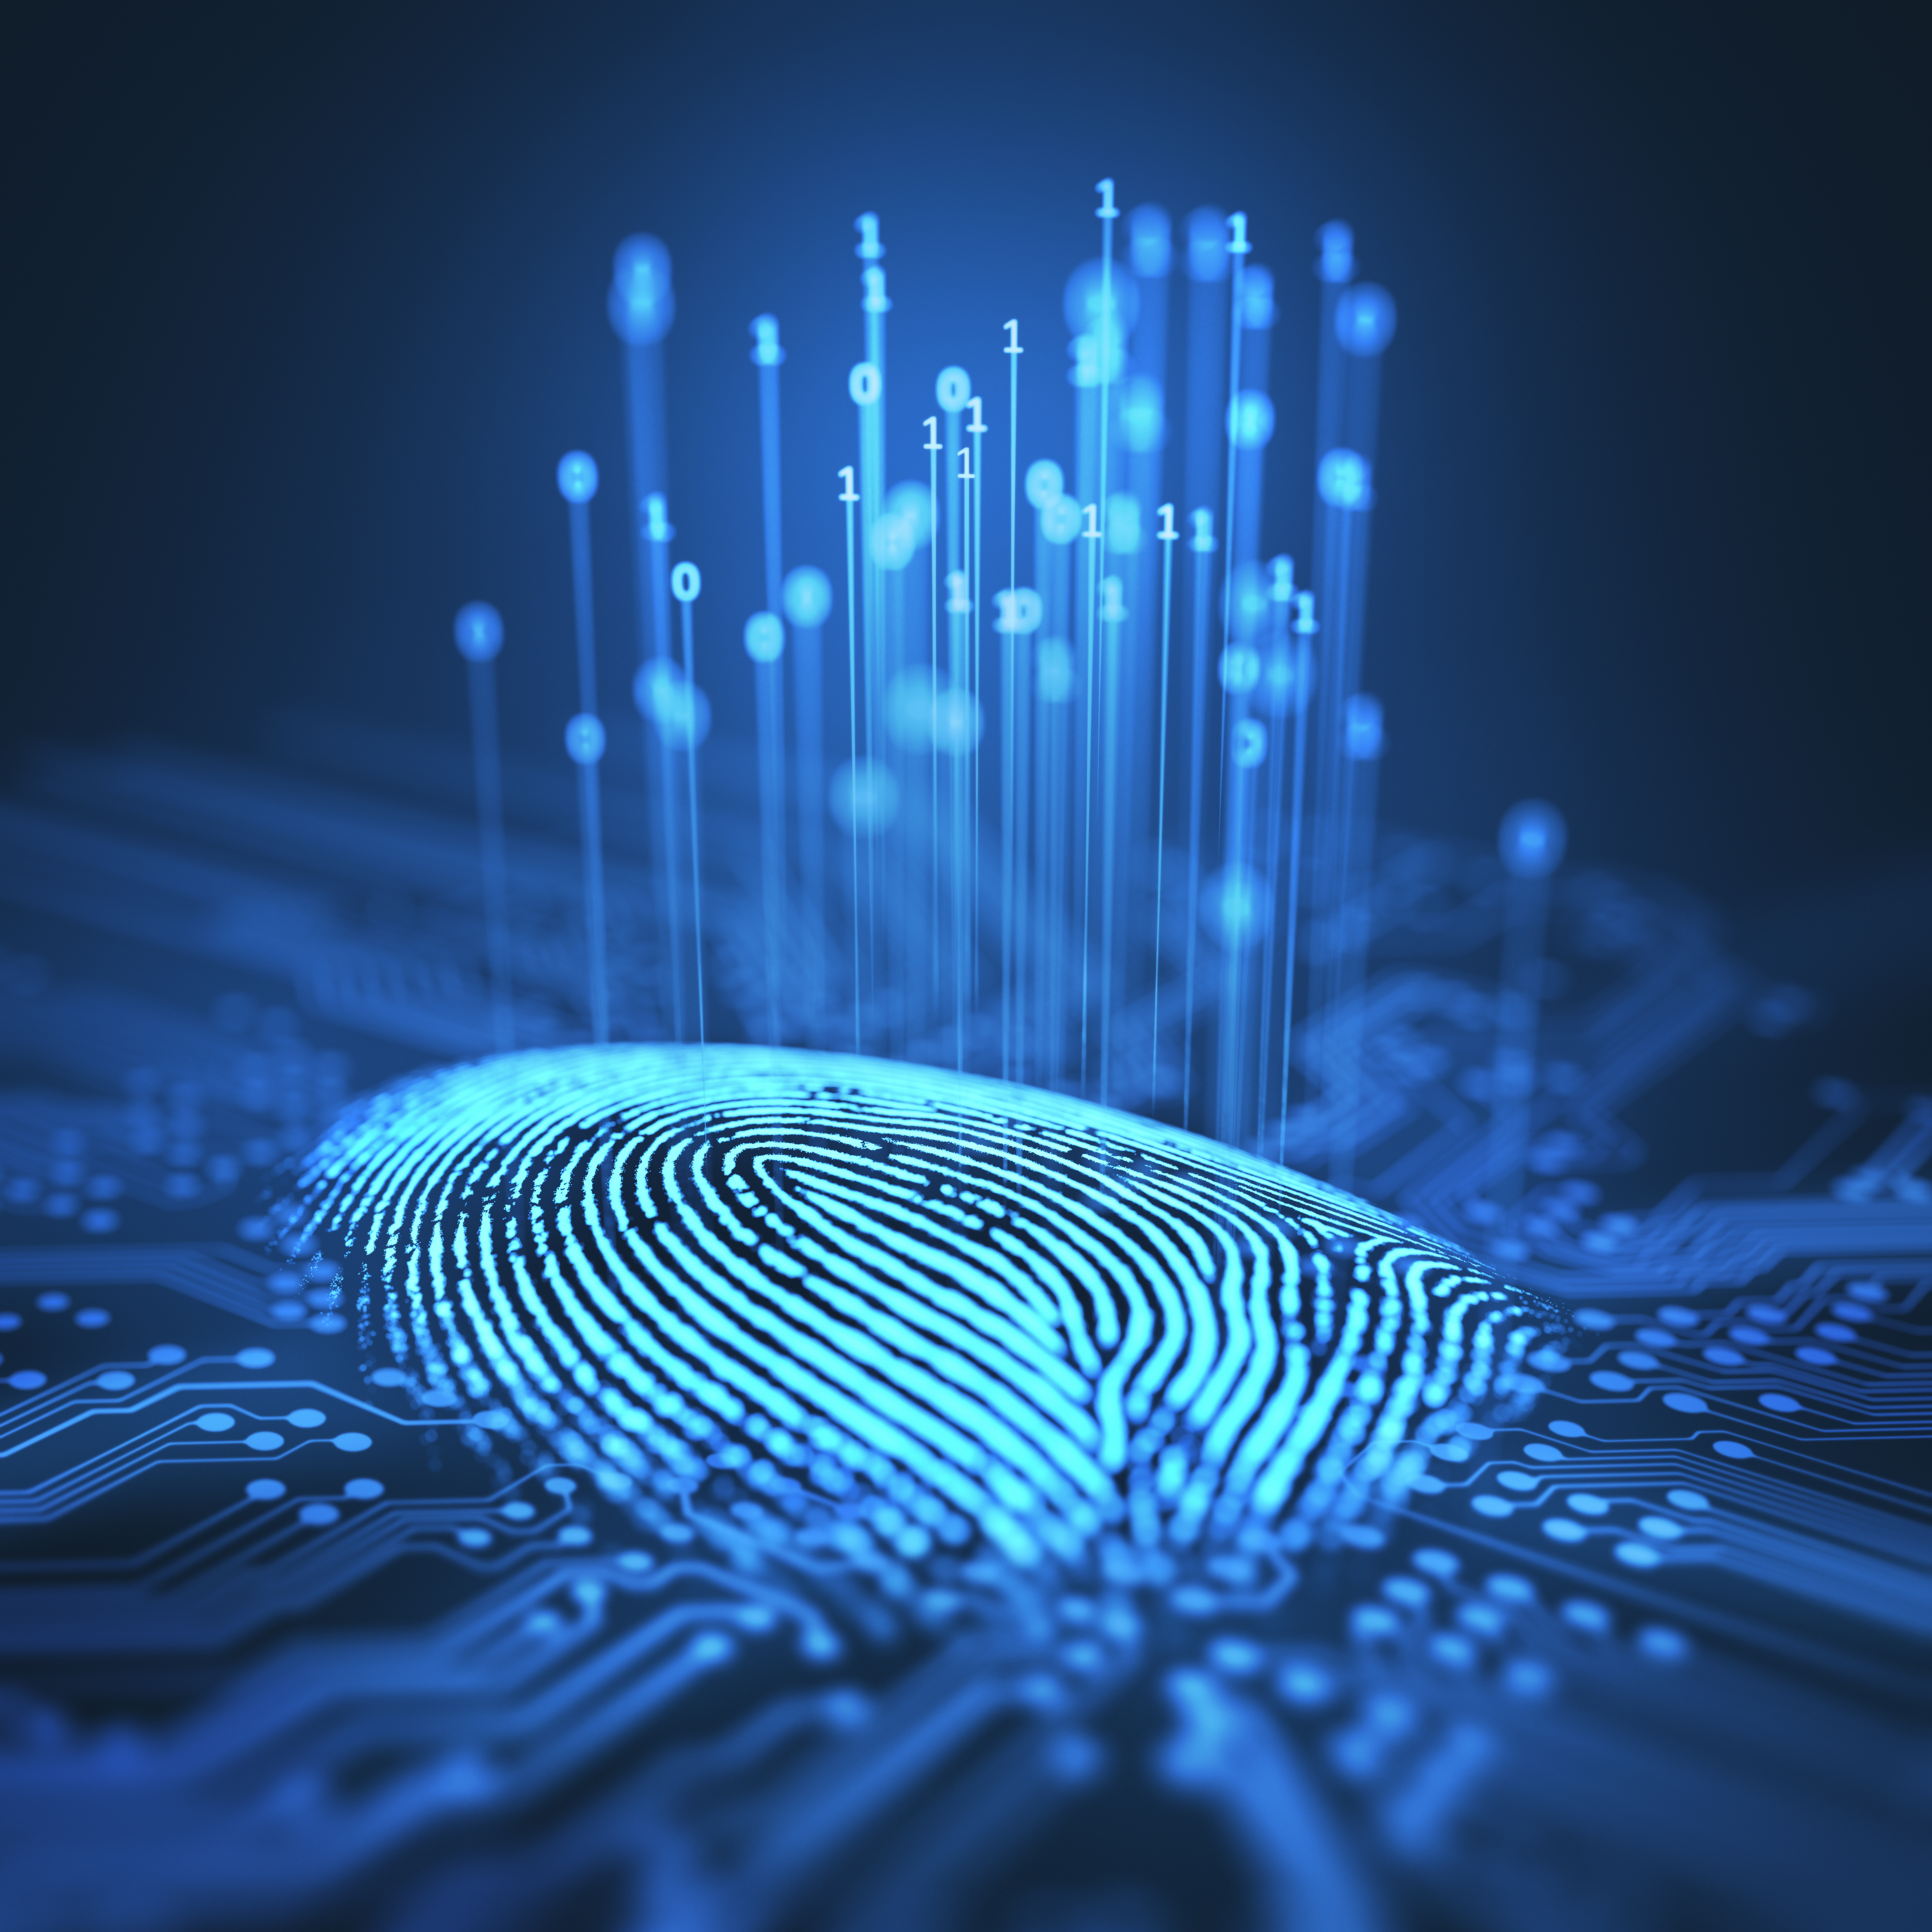 An image of a digital fingerprint